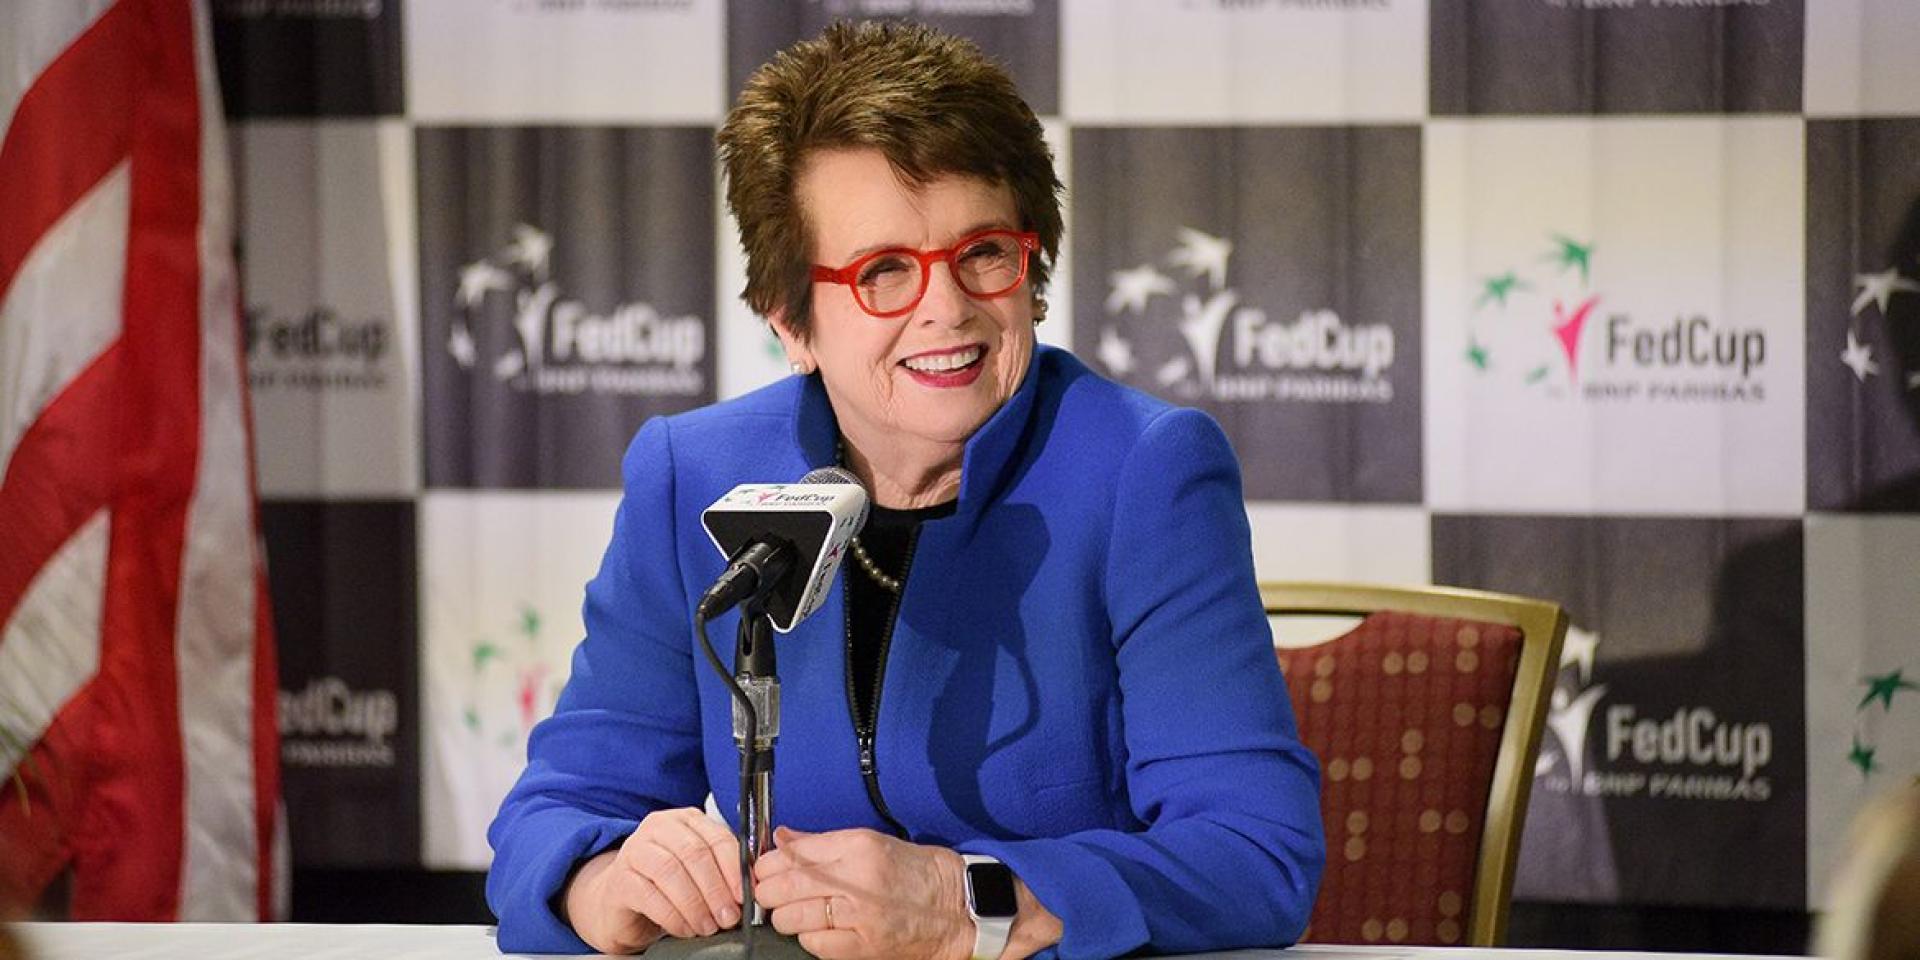 Fed Cup terá o nome de Billie Jean King